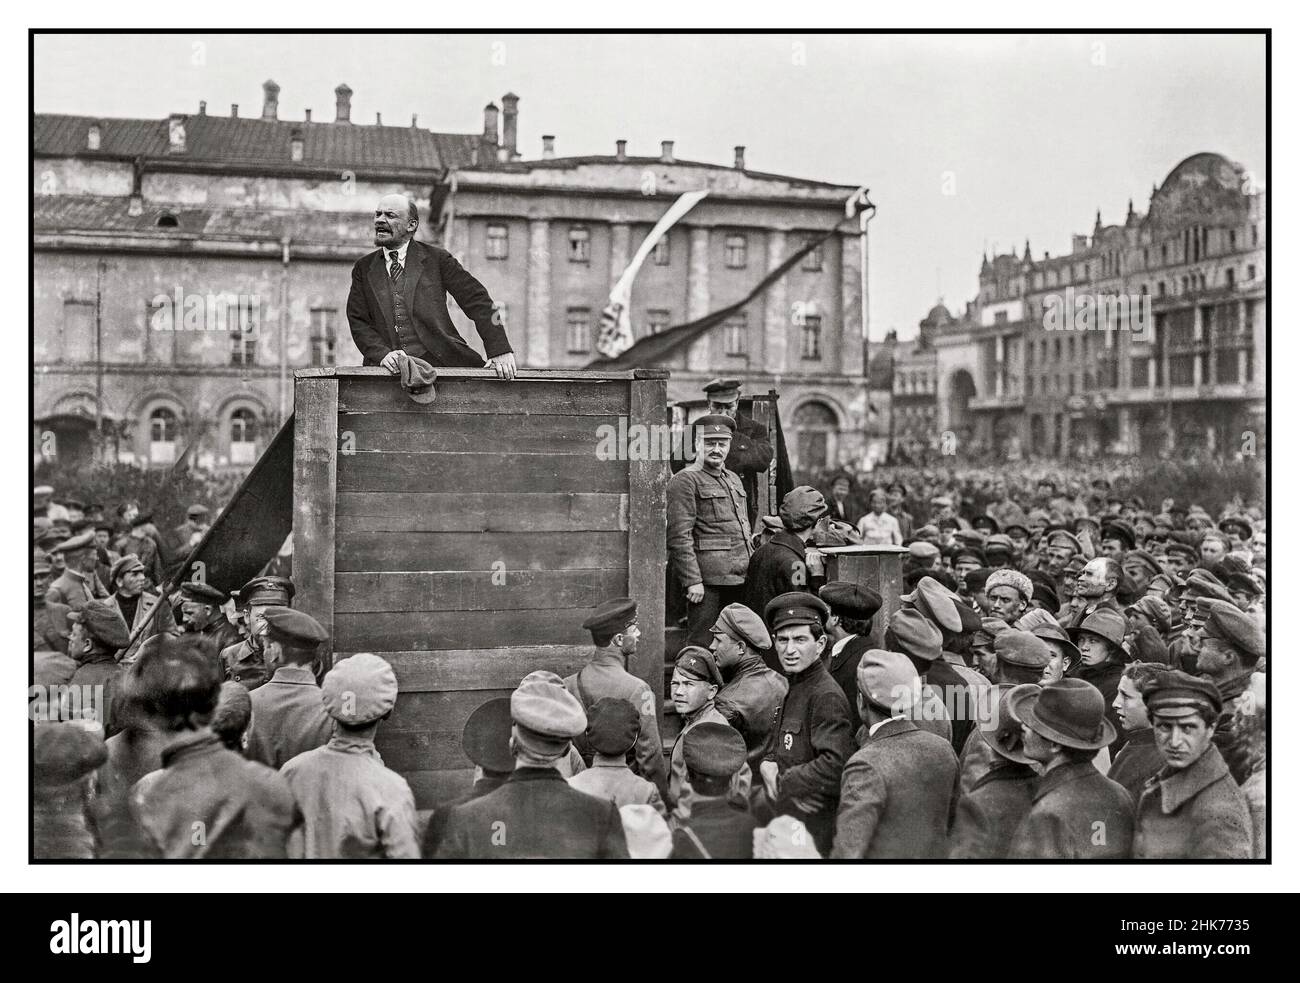 LENINREDE MOSKAU 1919/1920 Wladimir Lenin hält 1920 auf dem Moskauer Swerdlov-Platz eine leidenschaftliche Rede vor Mitgliedern der Roten Armee, die während des Polnisch-Sowjet-Krieges zur Front ausreisen.Vladmir Lenin spricht 1919 eine Menge Petrograder Arbeiter an. Auf der rechten Seite steht Trotzki. Stockfoto